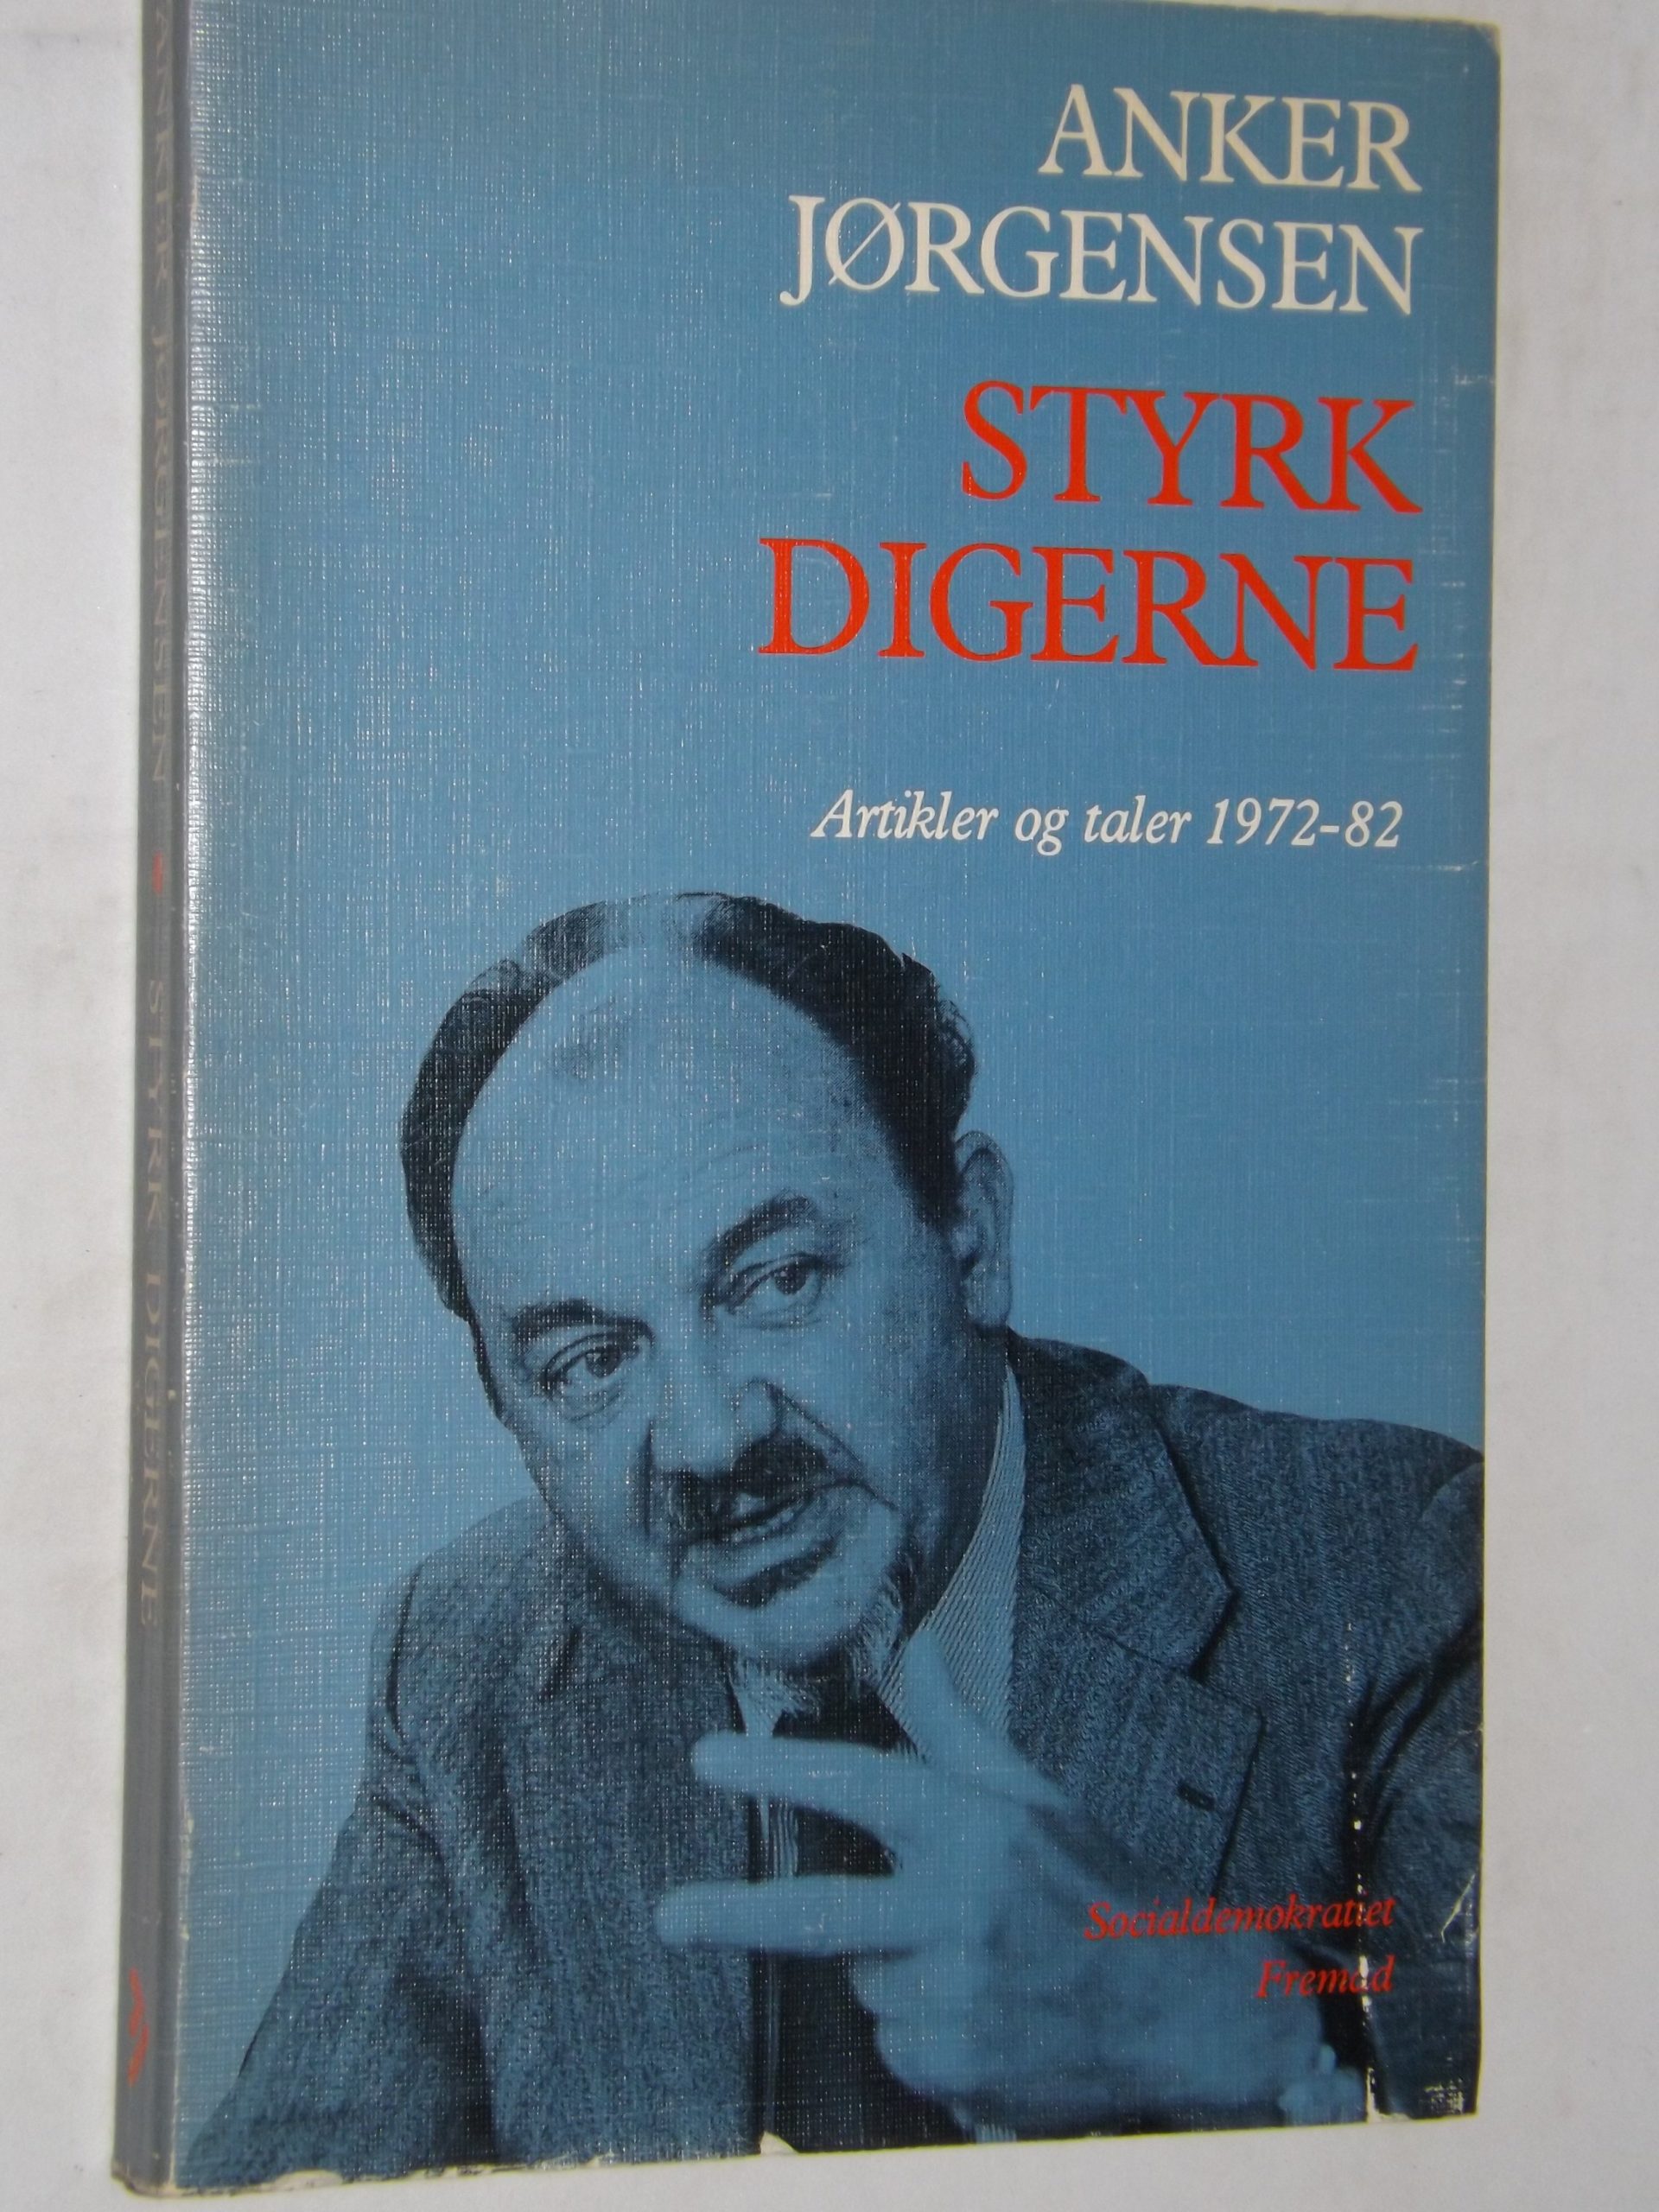 Jørgensen: Styrk digerne – Artikler og taler 1972-82 i udvalg ved Harry Rasmussen – bbog.dk – Brugte bøger til salg